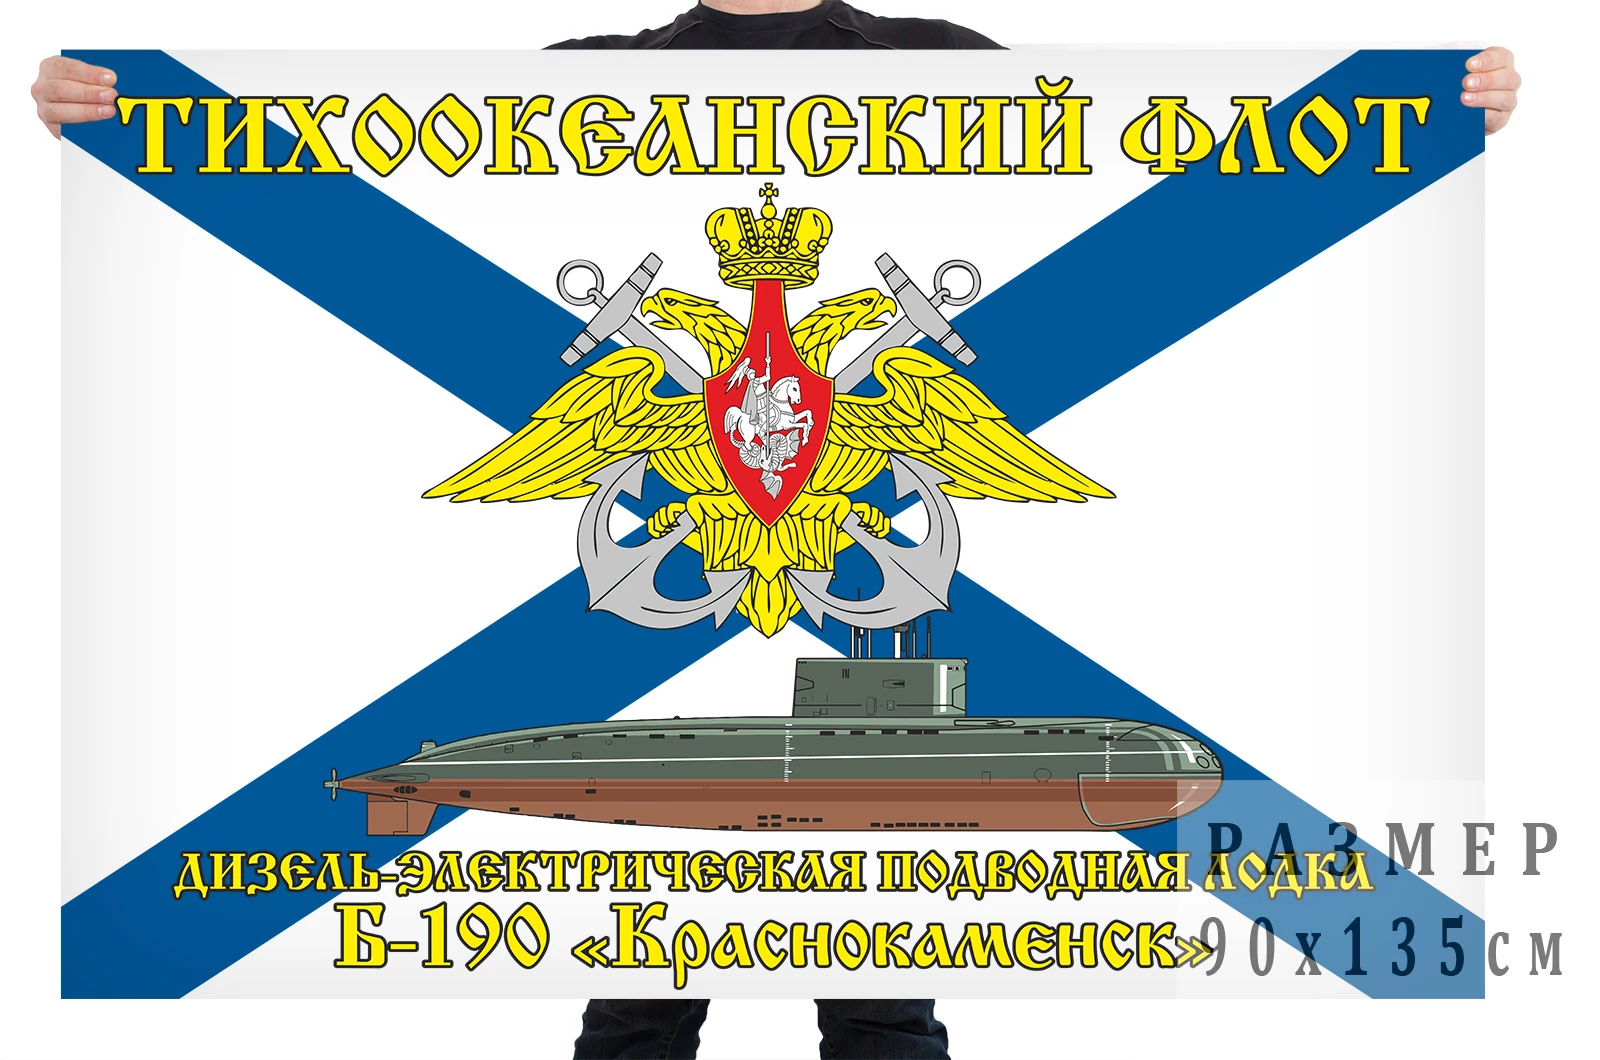 Флаг дизель-электрической подводной лодки Б-190 "Краснокаменск"